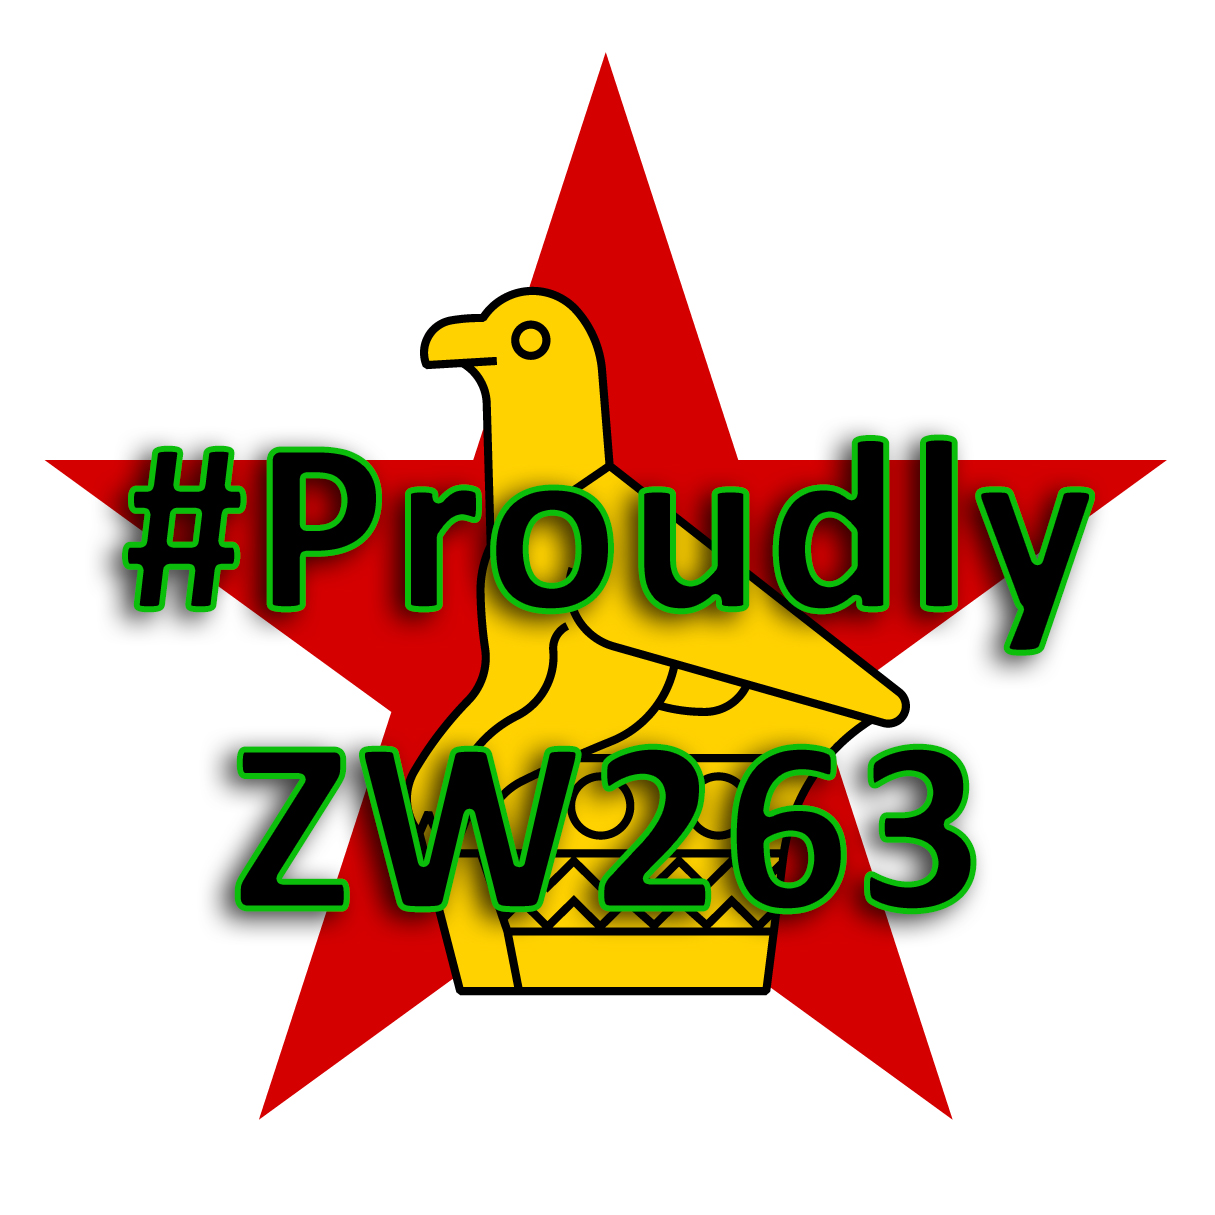 ProudlyZW263